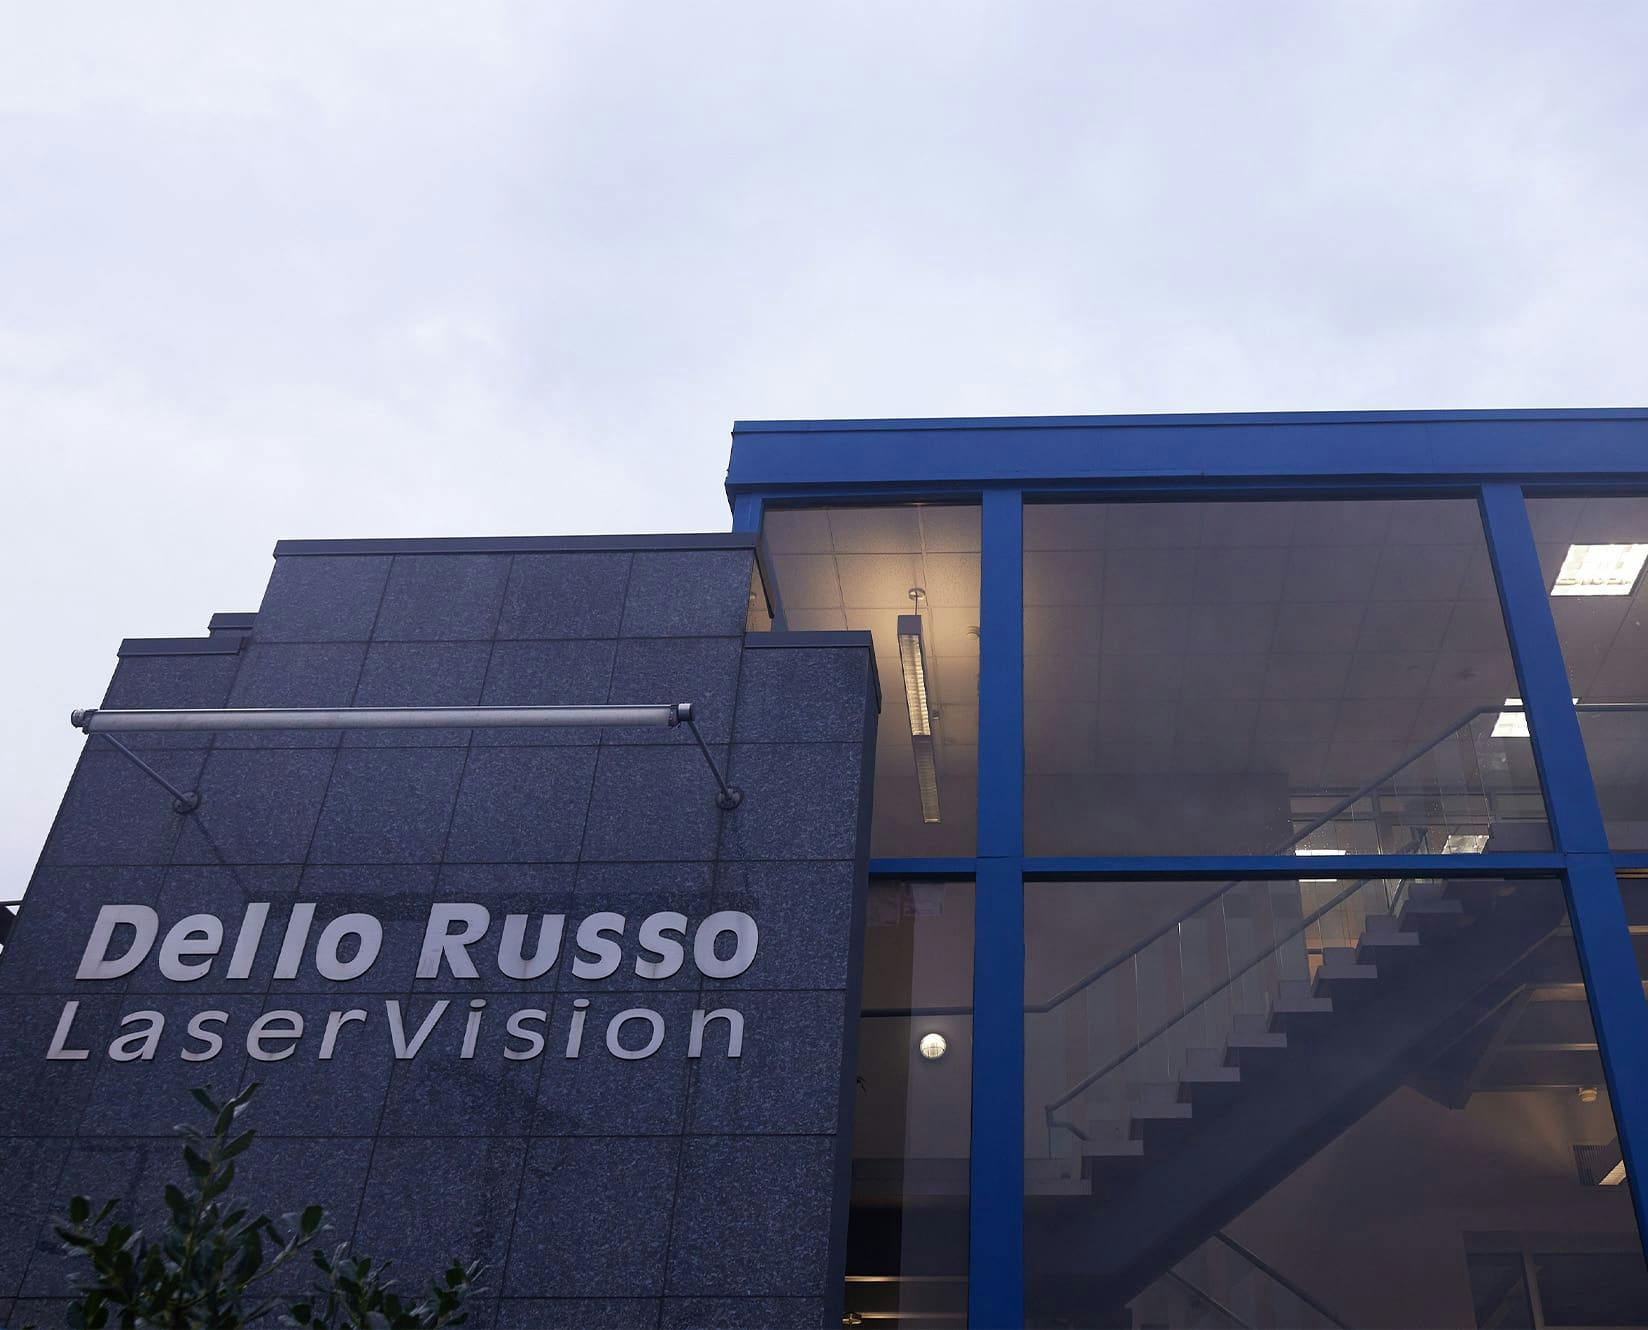 Dello Russo Laser Vision building